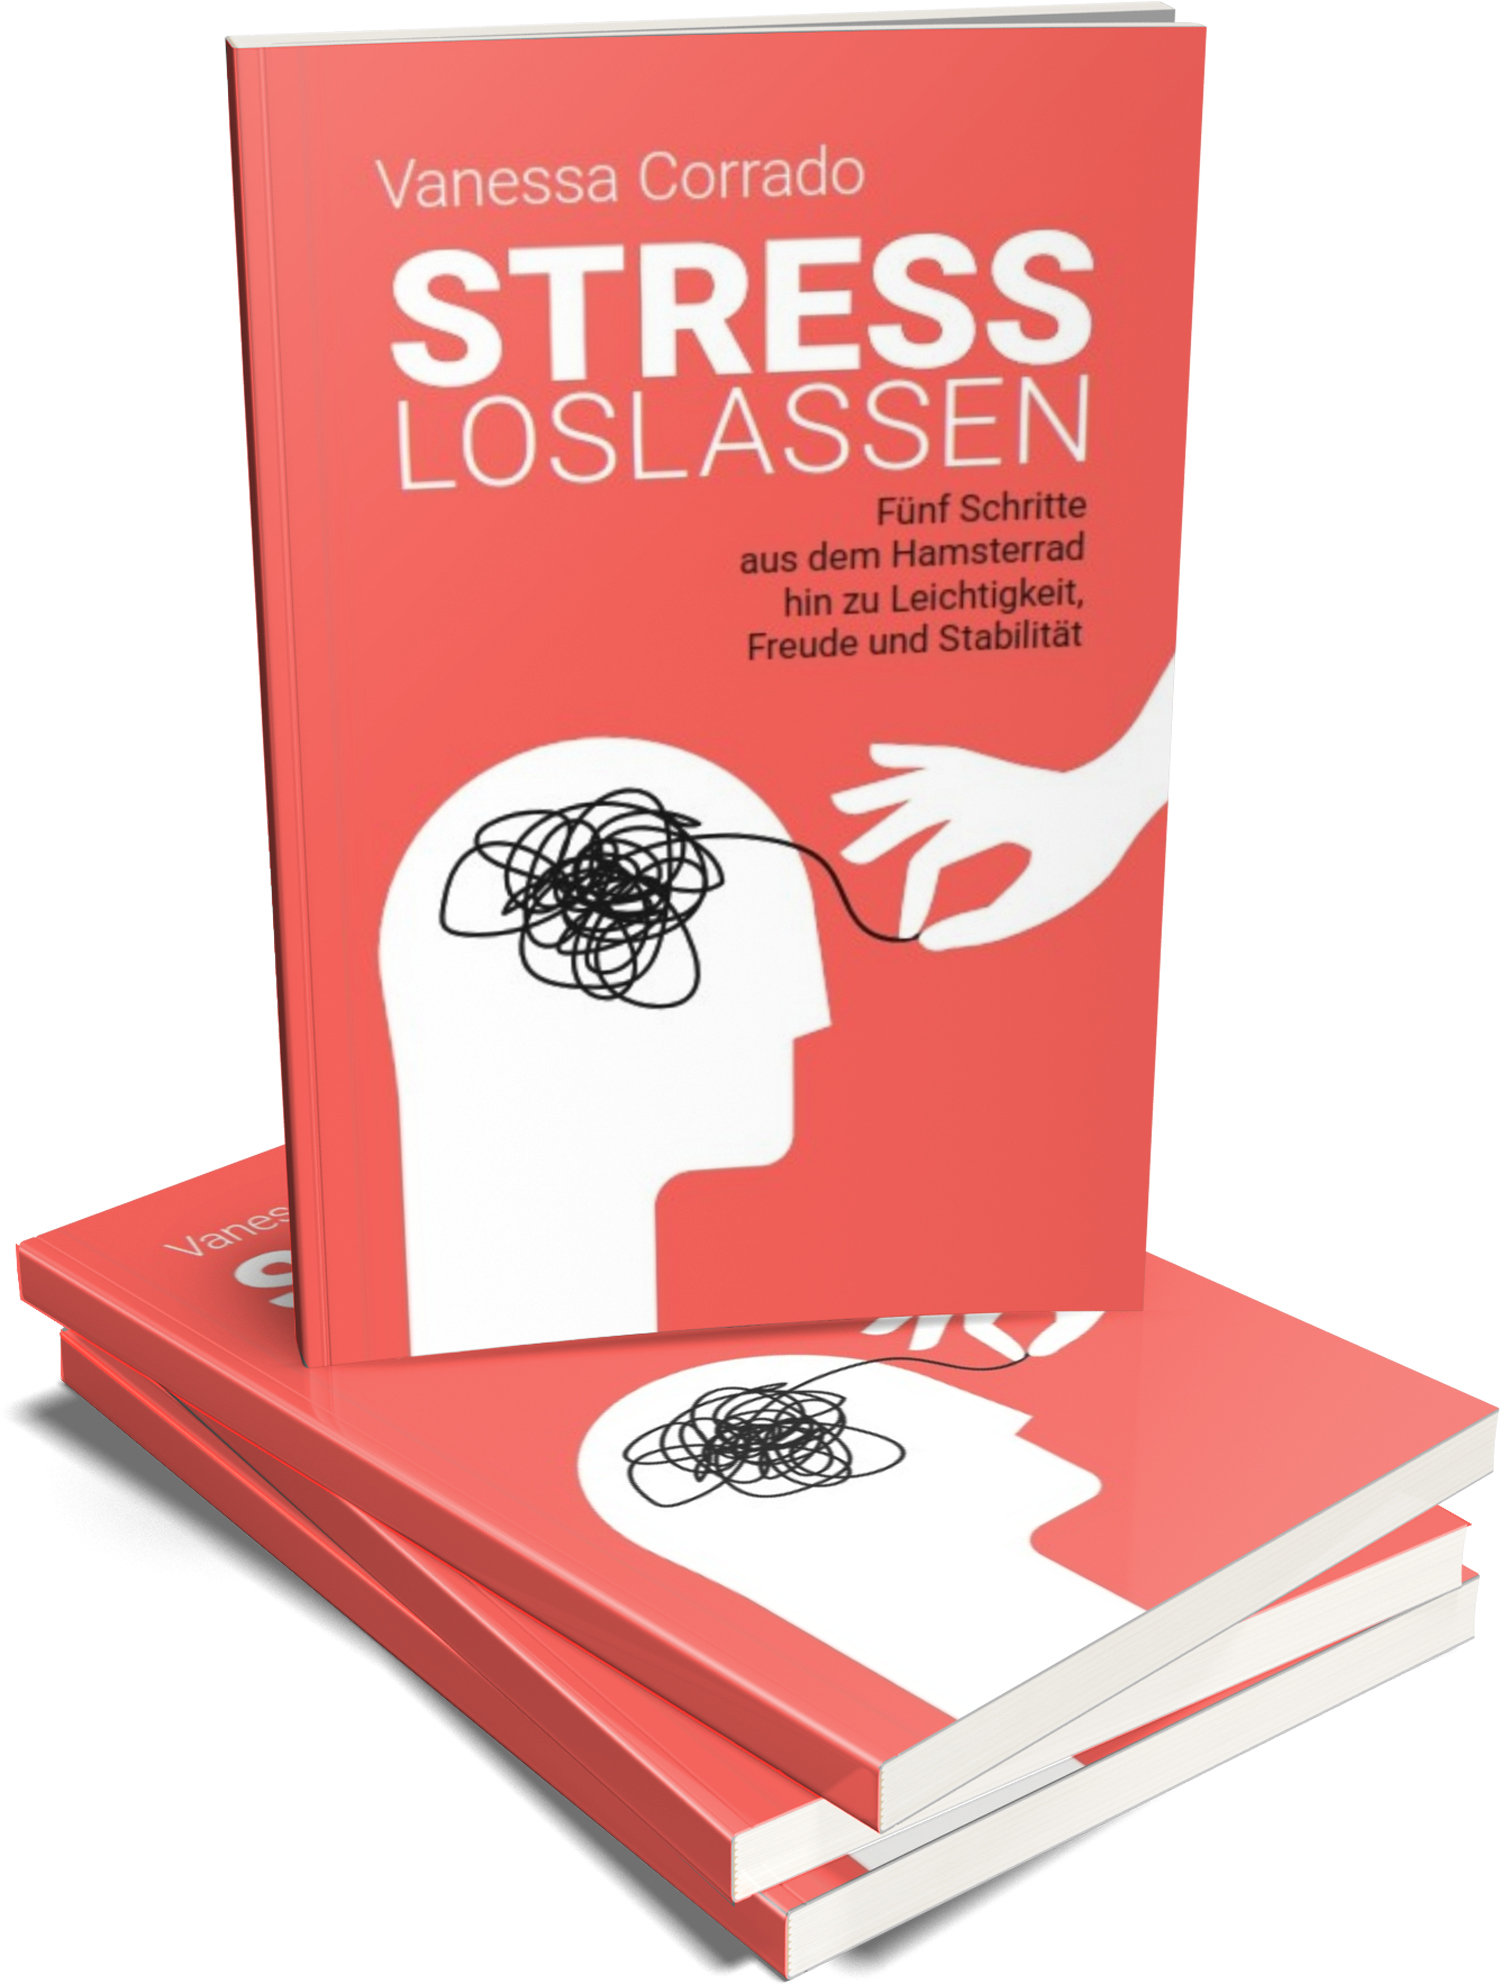 Stress loslassen: Das Buch von Vanessa Corrado.